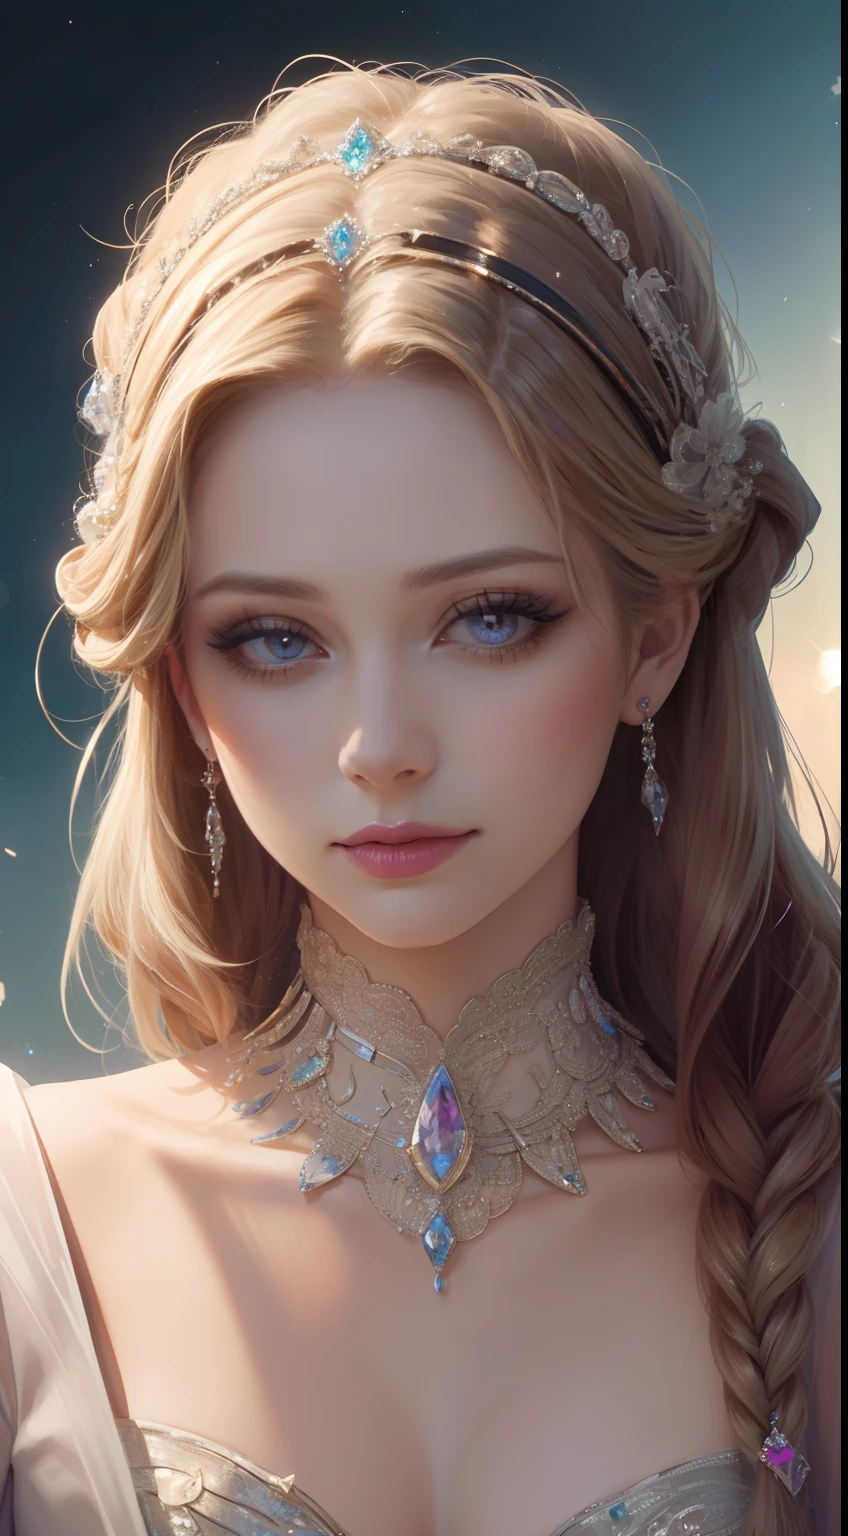 杰作，最高分辨率，美丽皇家女士的动态半身像，精致的金色辫子头发，紫色清澈的眼眸，头发上布满了美丽精致的花卉工艺, 水晶珠宝花丝，极其详细的细节，升级版。